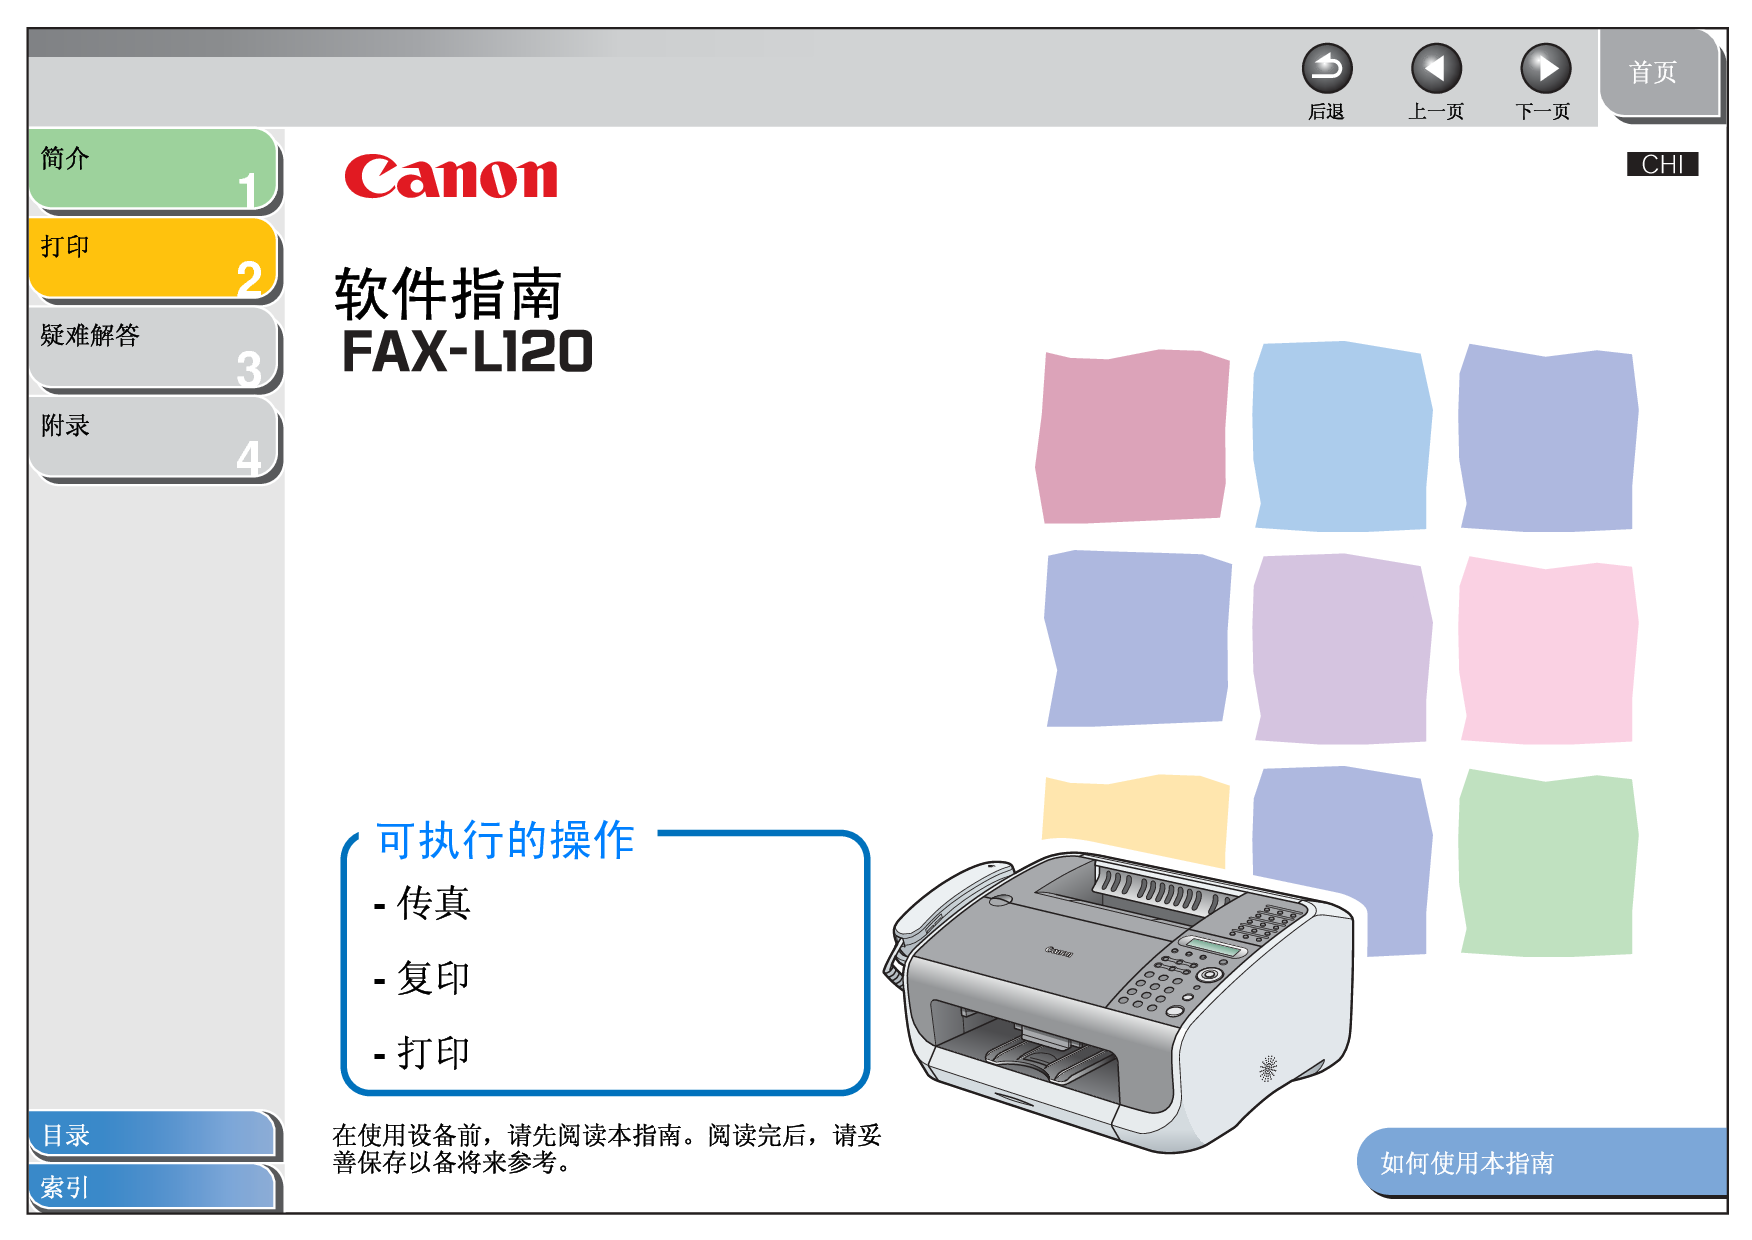 佳能 Canon FAX-L120 软件 用户指南 封面